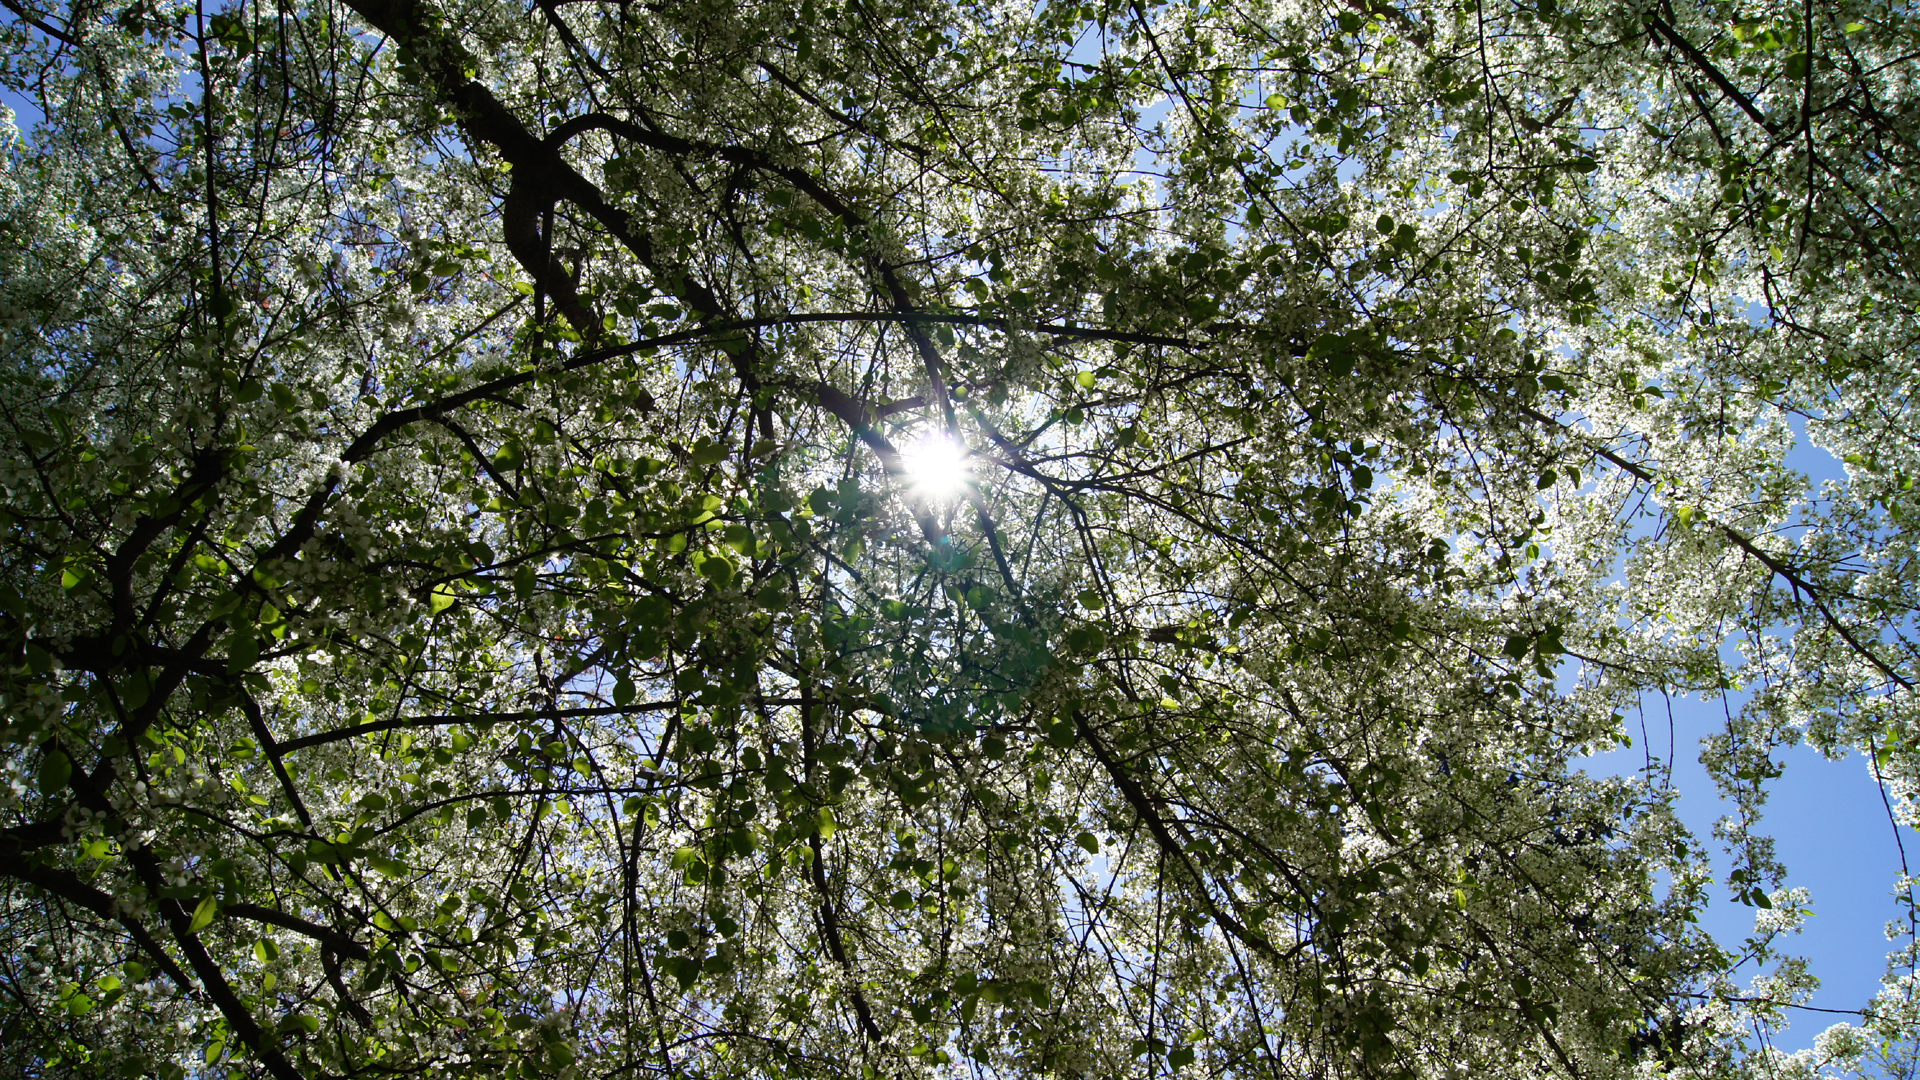 Fotostrecke Frühling Abbildung 04: Frühling im Botanischen Garten von Madrid